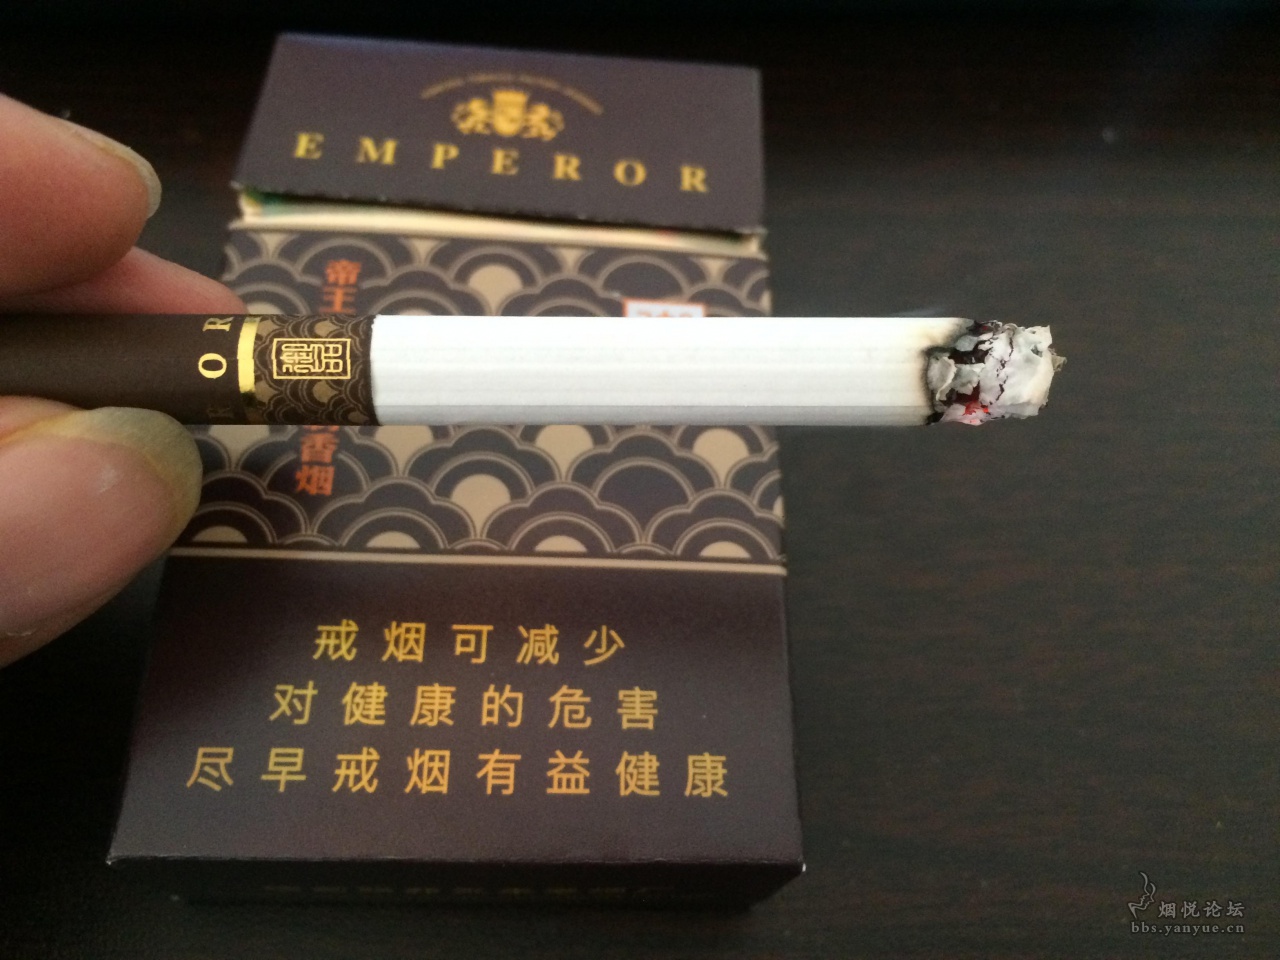 缅甸烟 - 香烟漫谈 - 烟悦网论坛